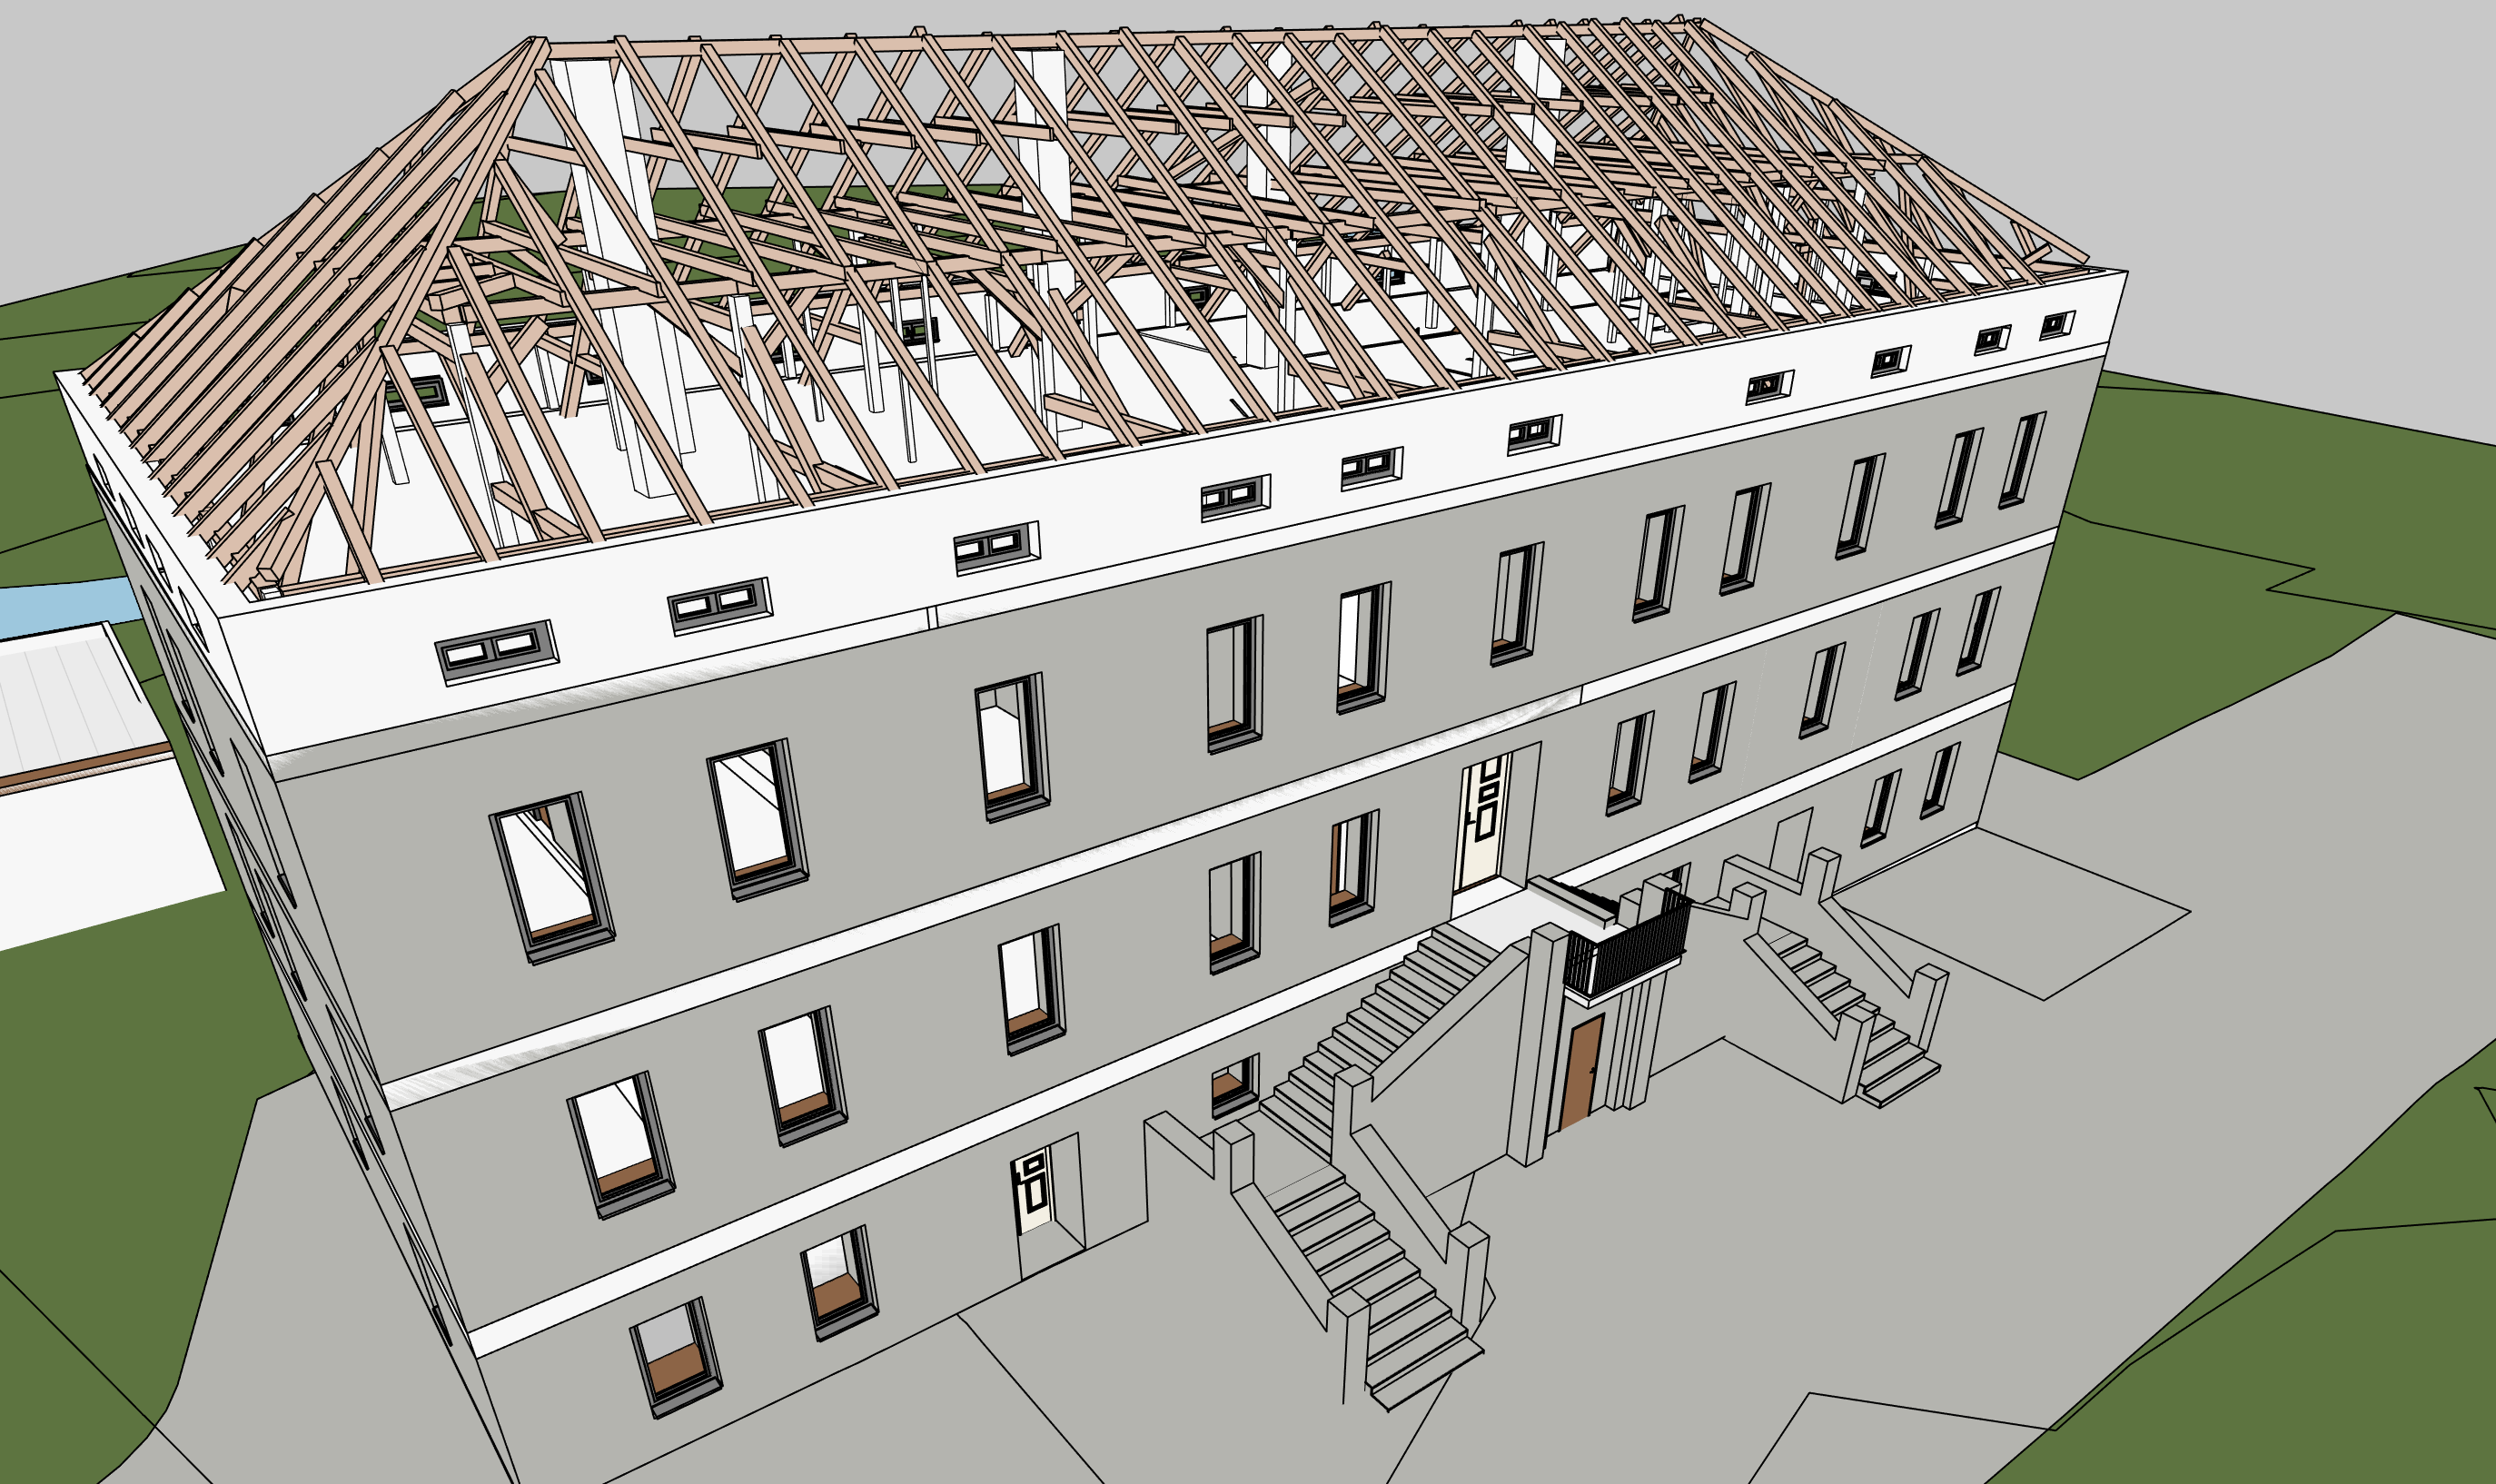 Abb. 2: Modellierter Dachstuhl mit dem Herrenhaus Herrenhausmodell